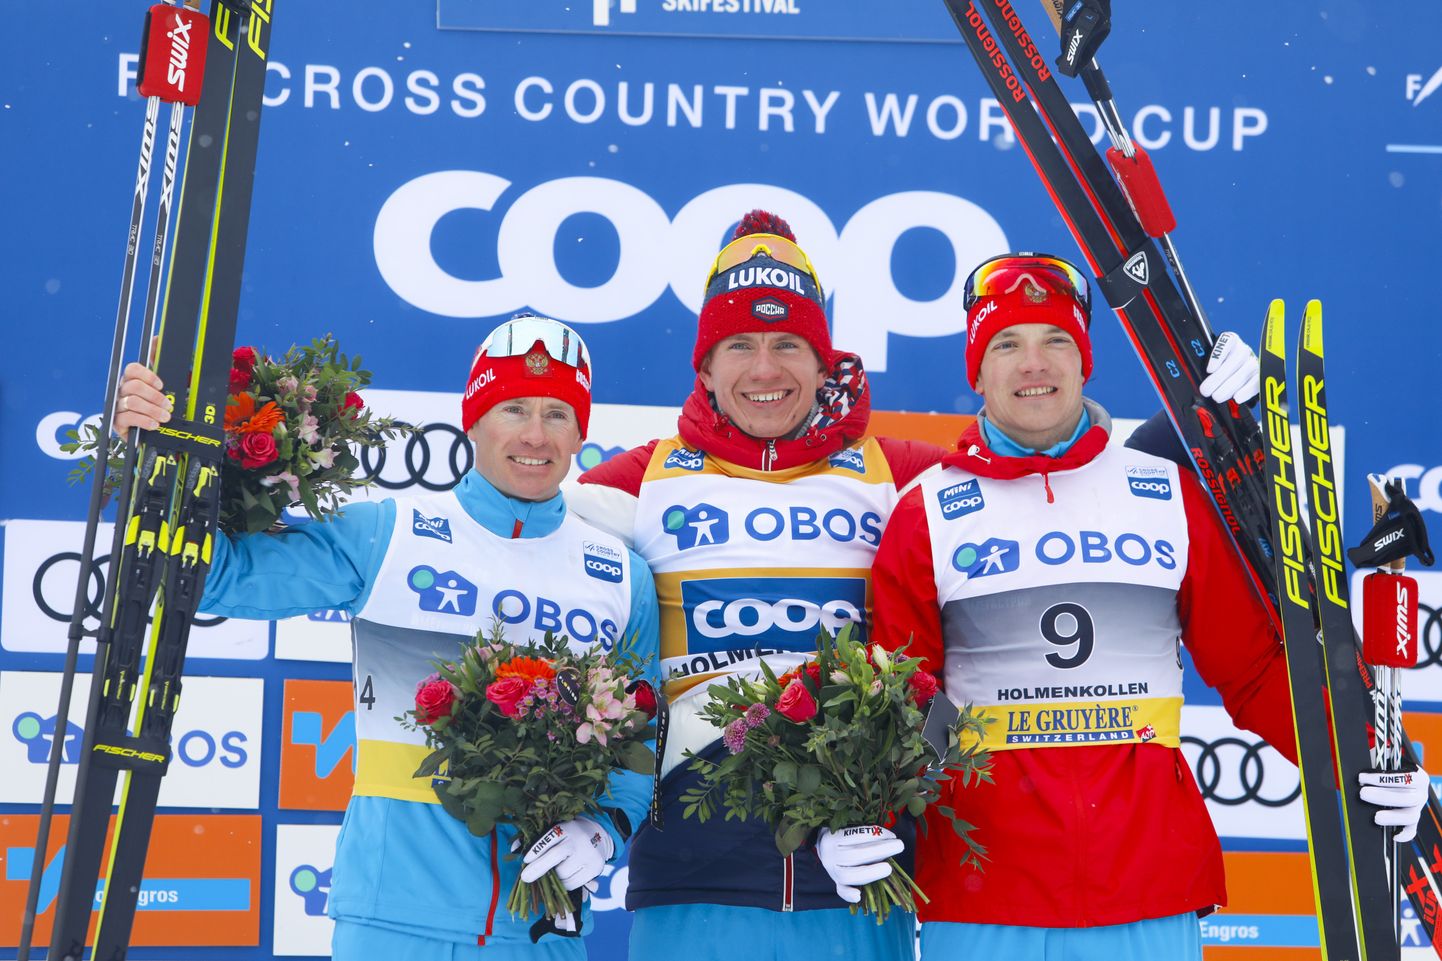 Максим Вылегжанин, Александр Большунов и Андрей Ларков заняли три первых места на марафоне в Осло.